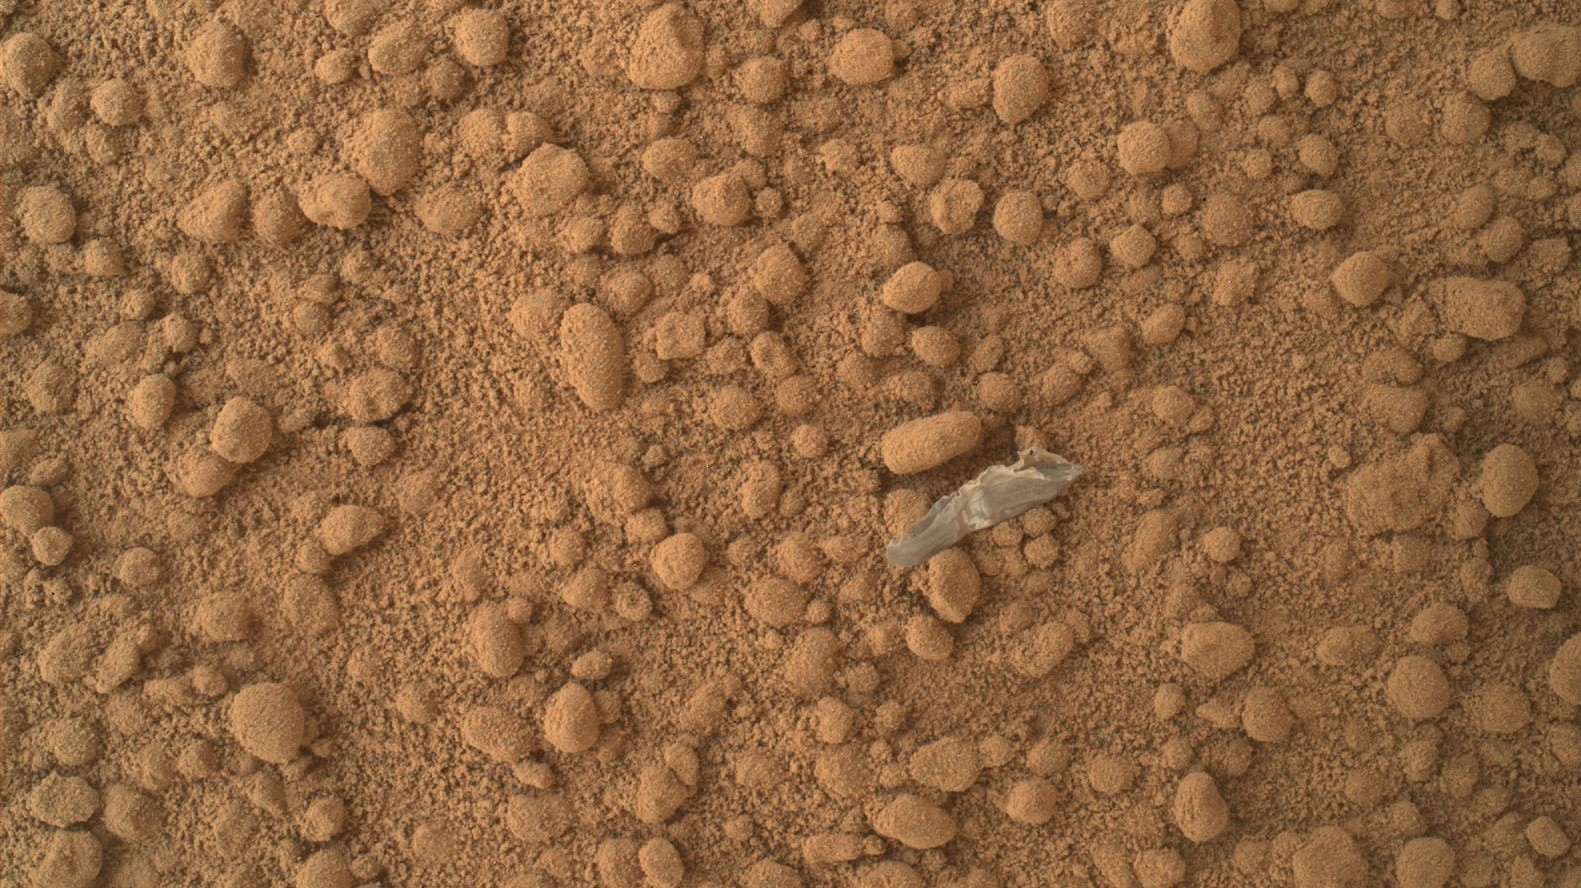 Pedaço de plástico em Marte. Crédito: NASA/JPL-Caltech